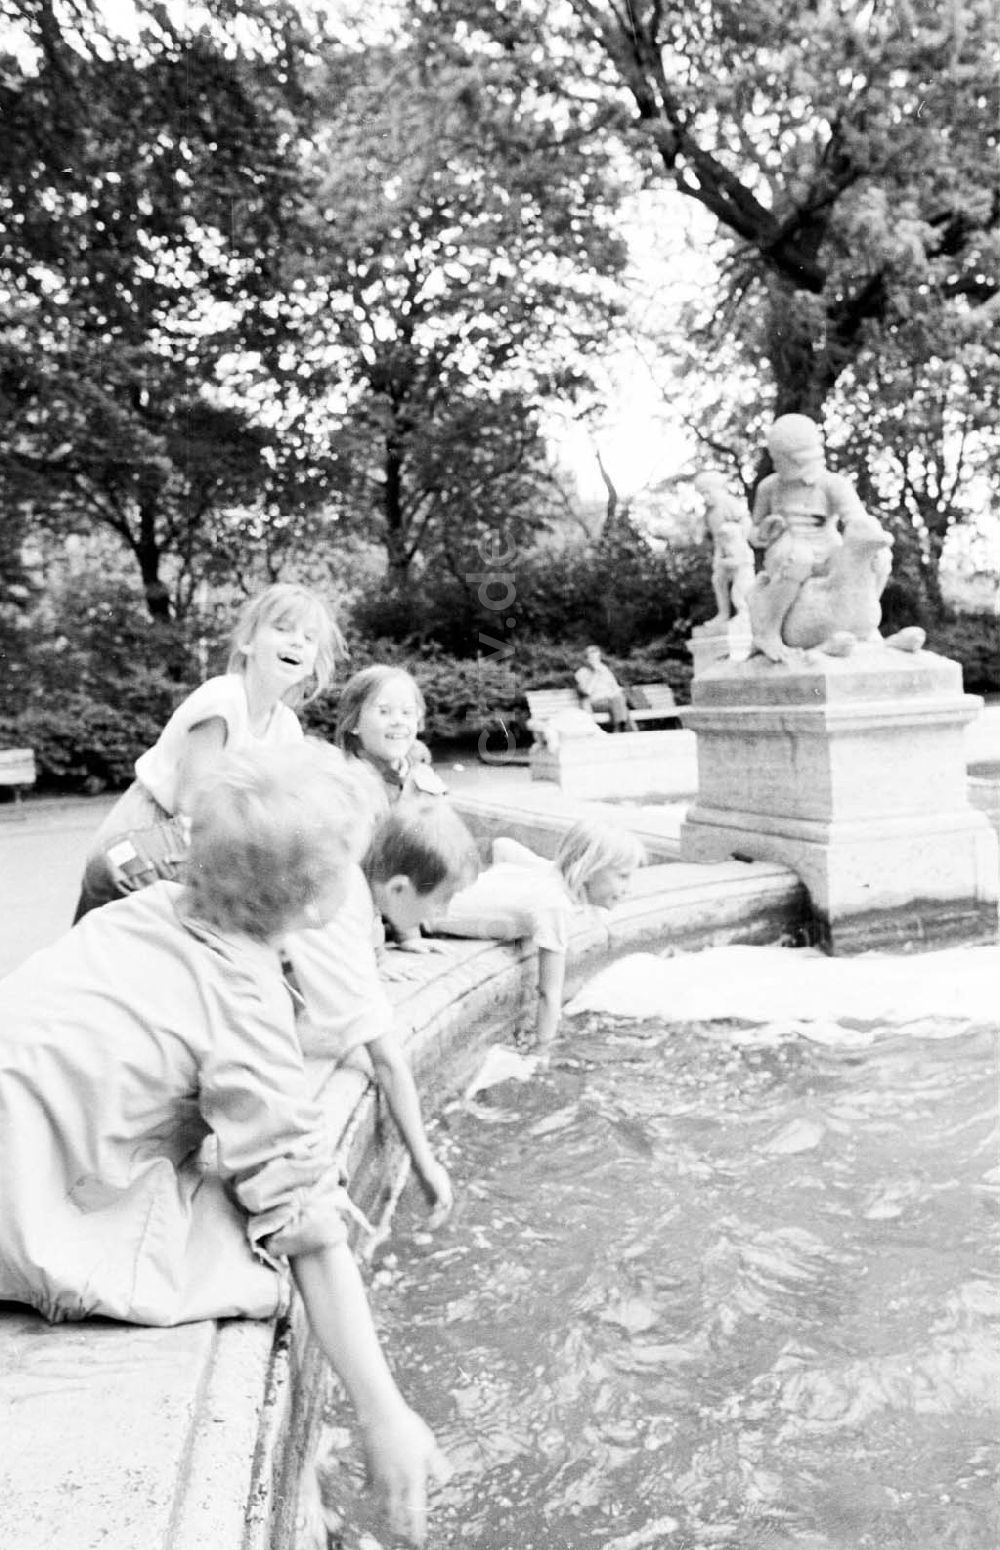 DDR-Bildarchiv: Berlin - Märchenhafte Prakidylle am Märchenbrunnen im Volkspark Friedrichshain 27.06.1989